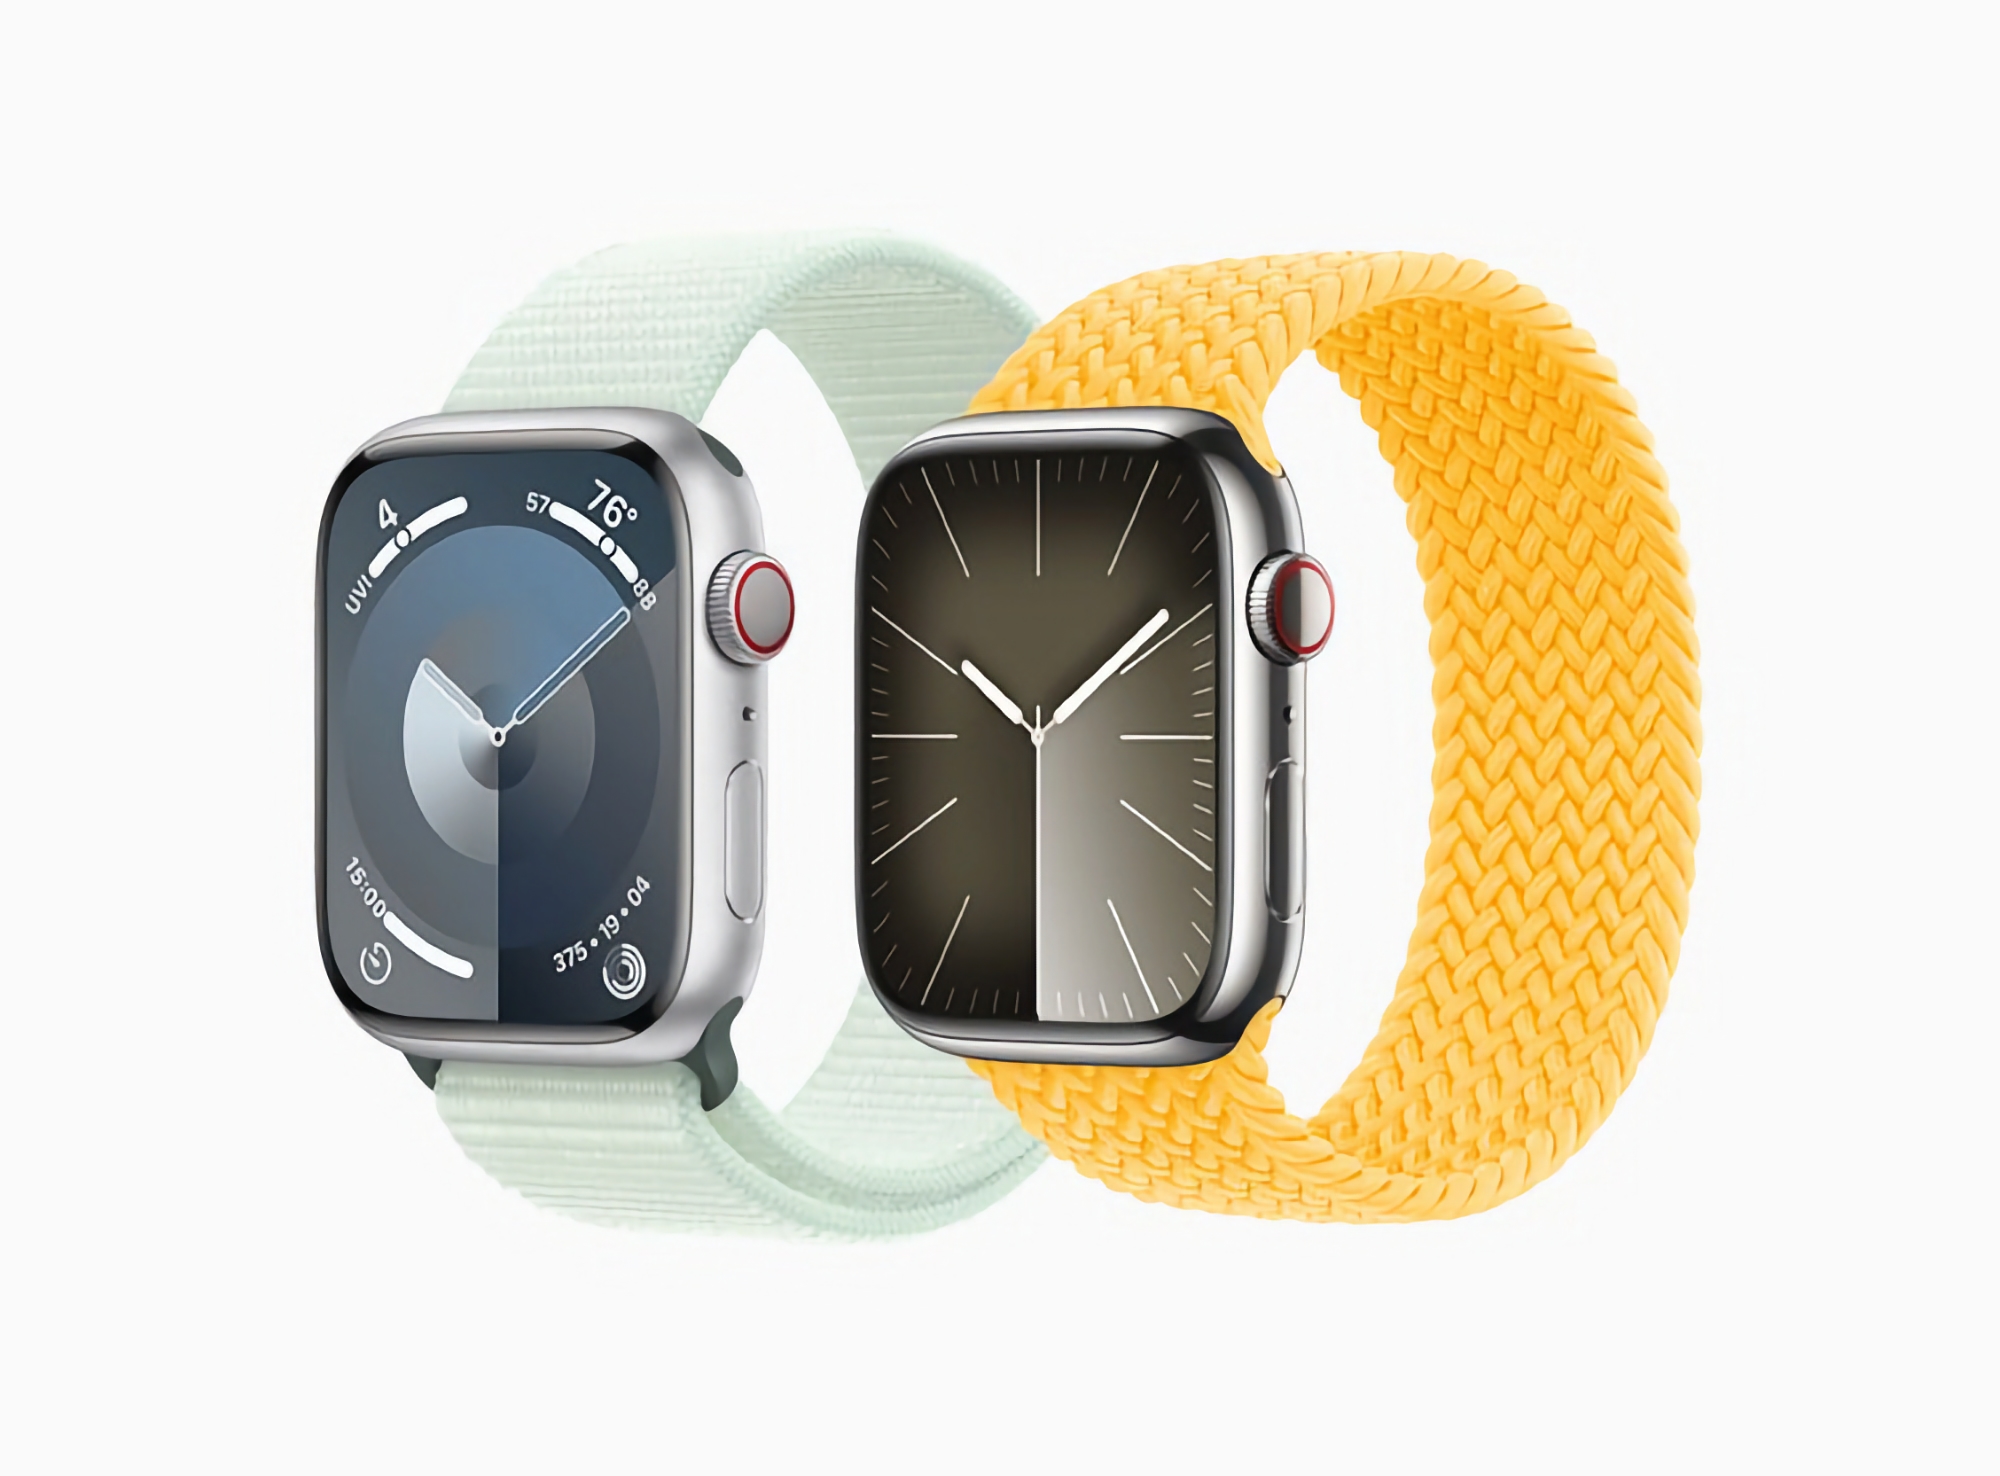 Apple ha empezado a vender Apple Watch Series 9 reacondicionados en determinados países